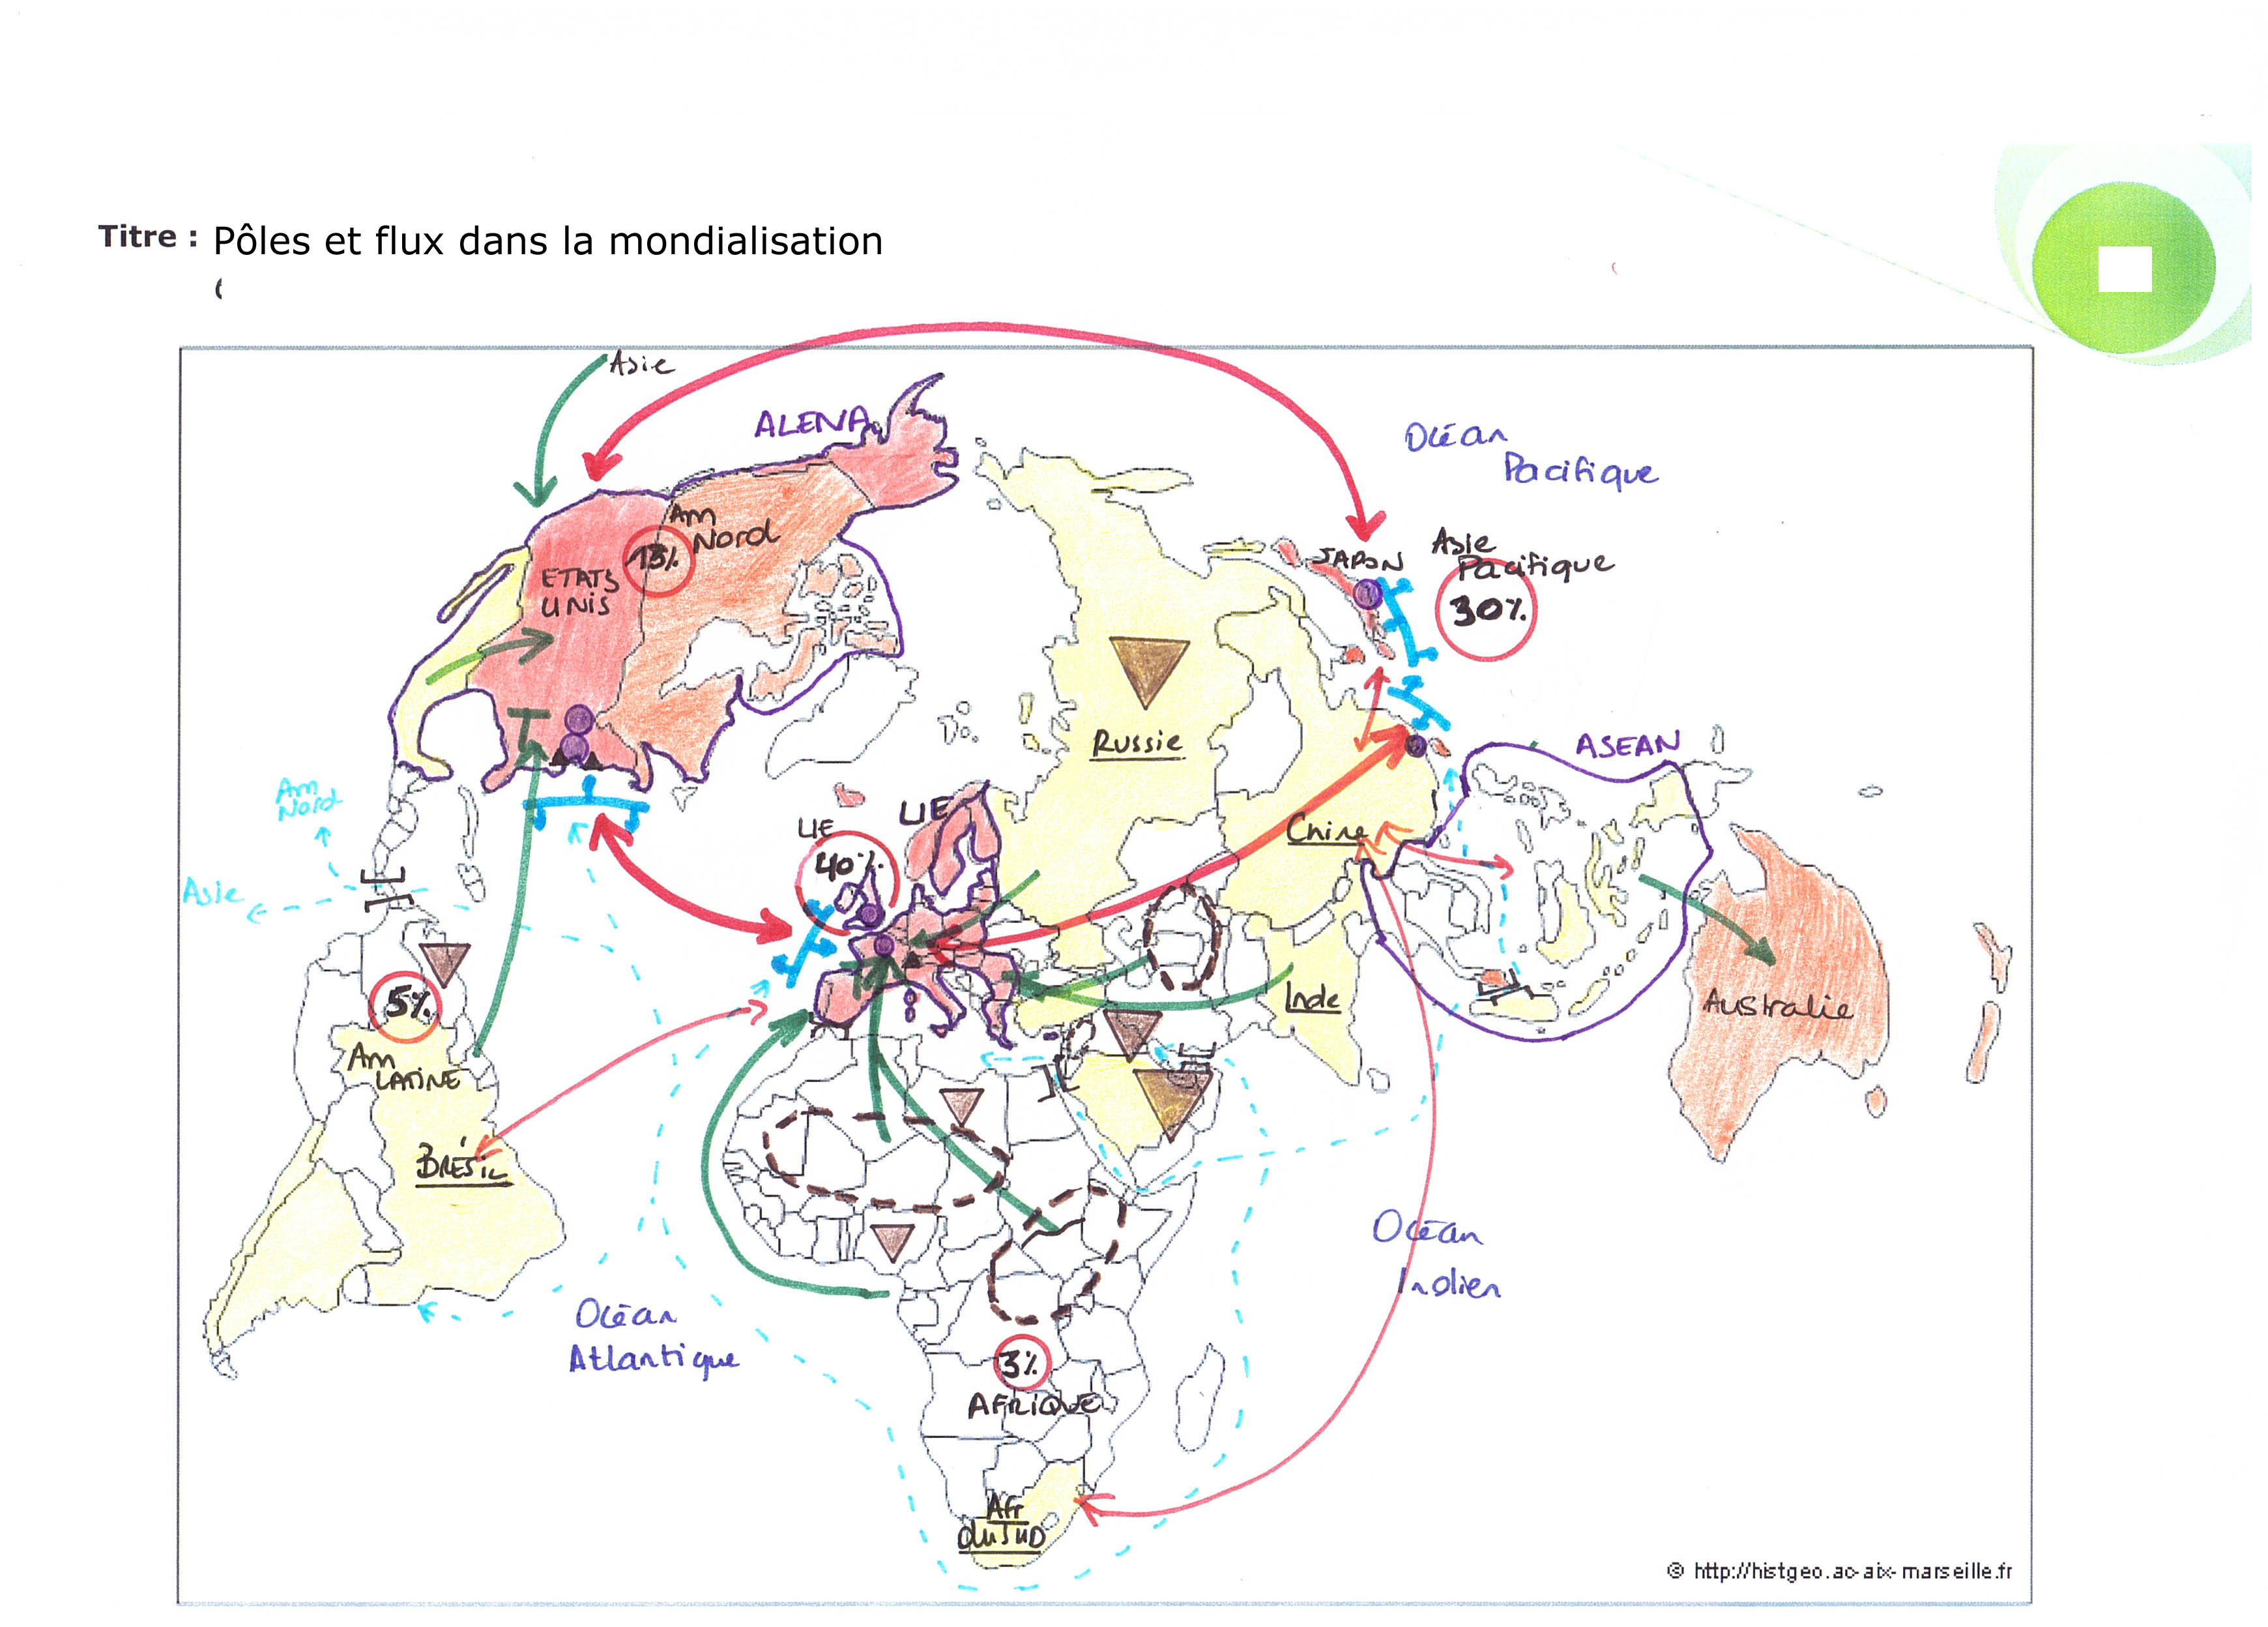 Dissertation sur la mondialisation bac